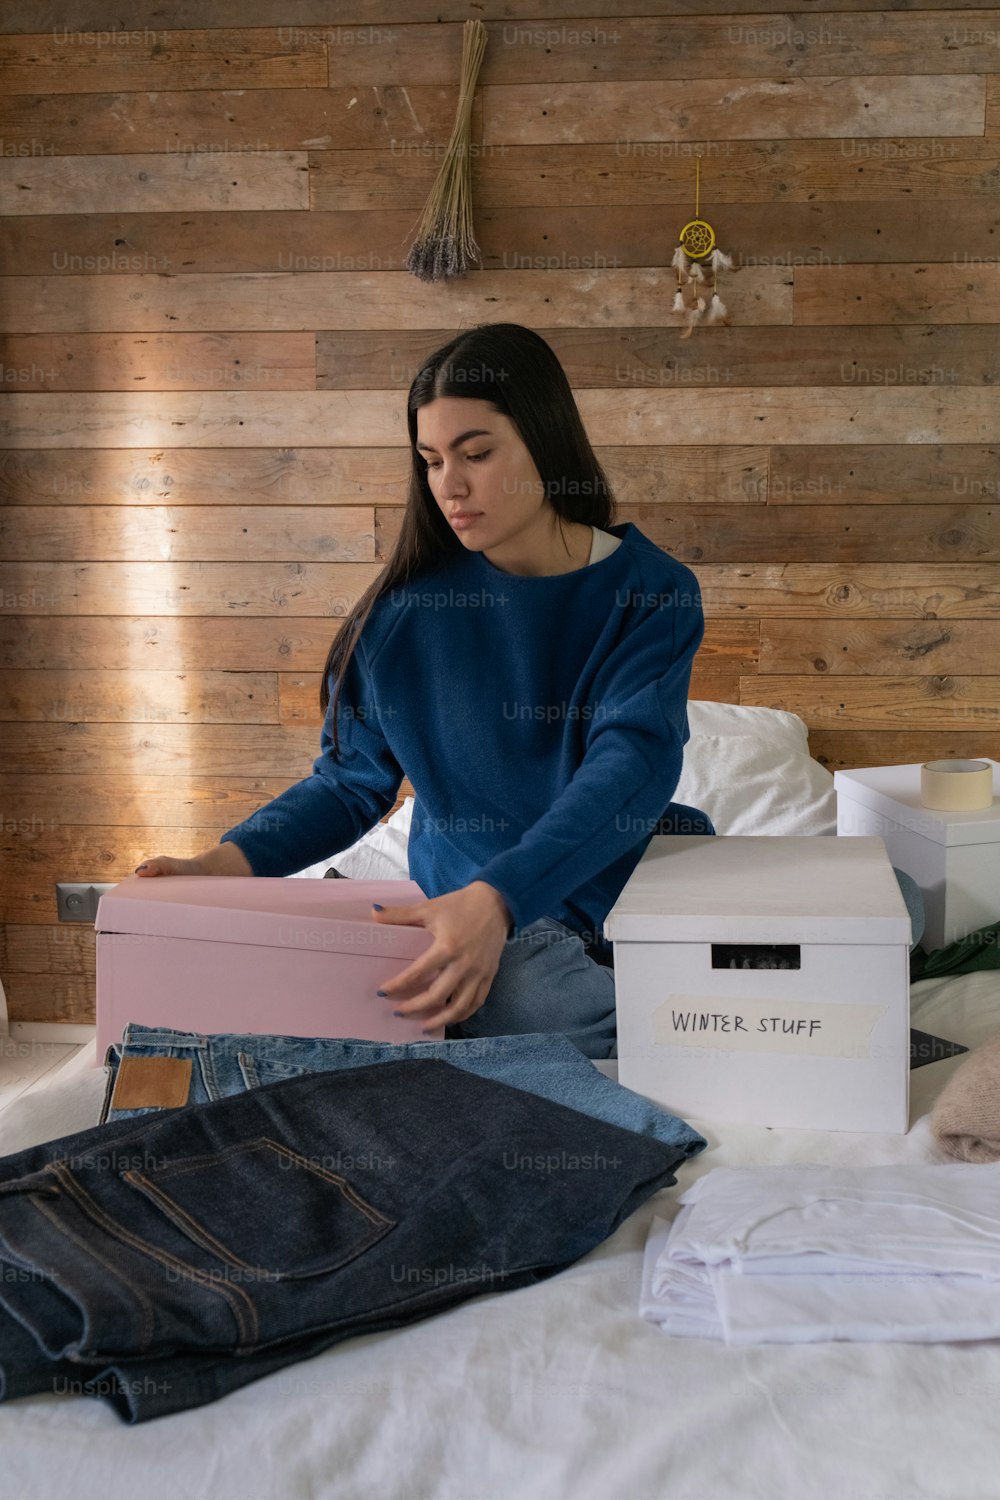 Una mujer sentada en una cama sosteniendo una caja